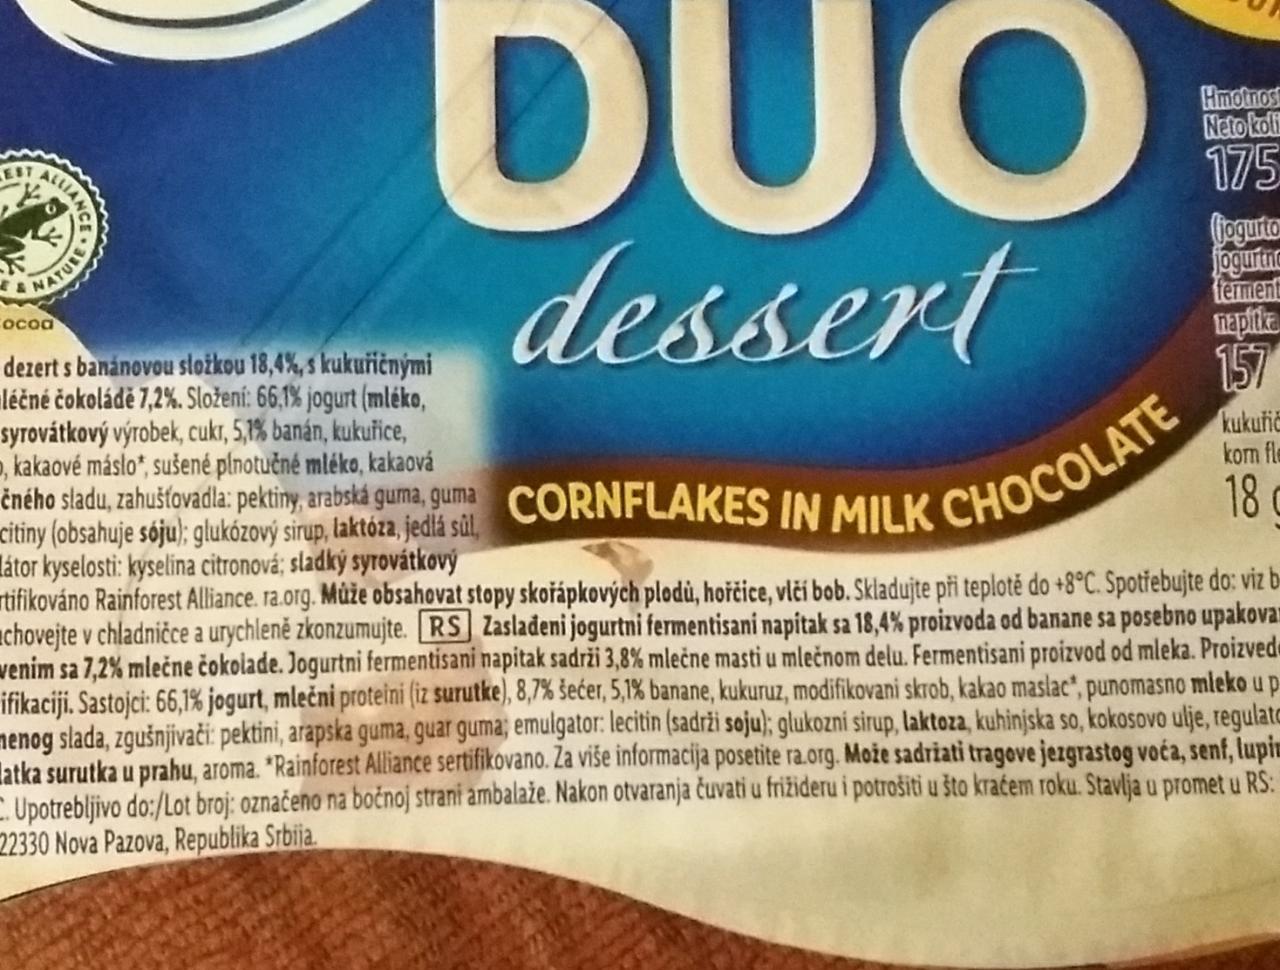 Fotografie - Duo dessert cornflakes in milk chocolate Pilos